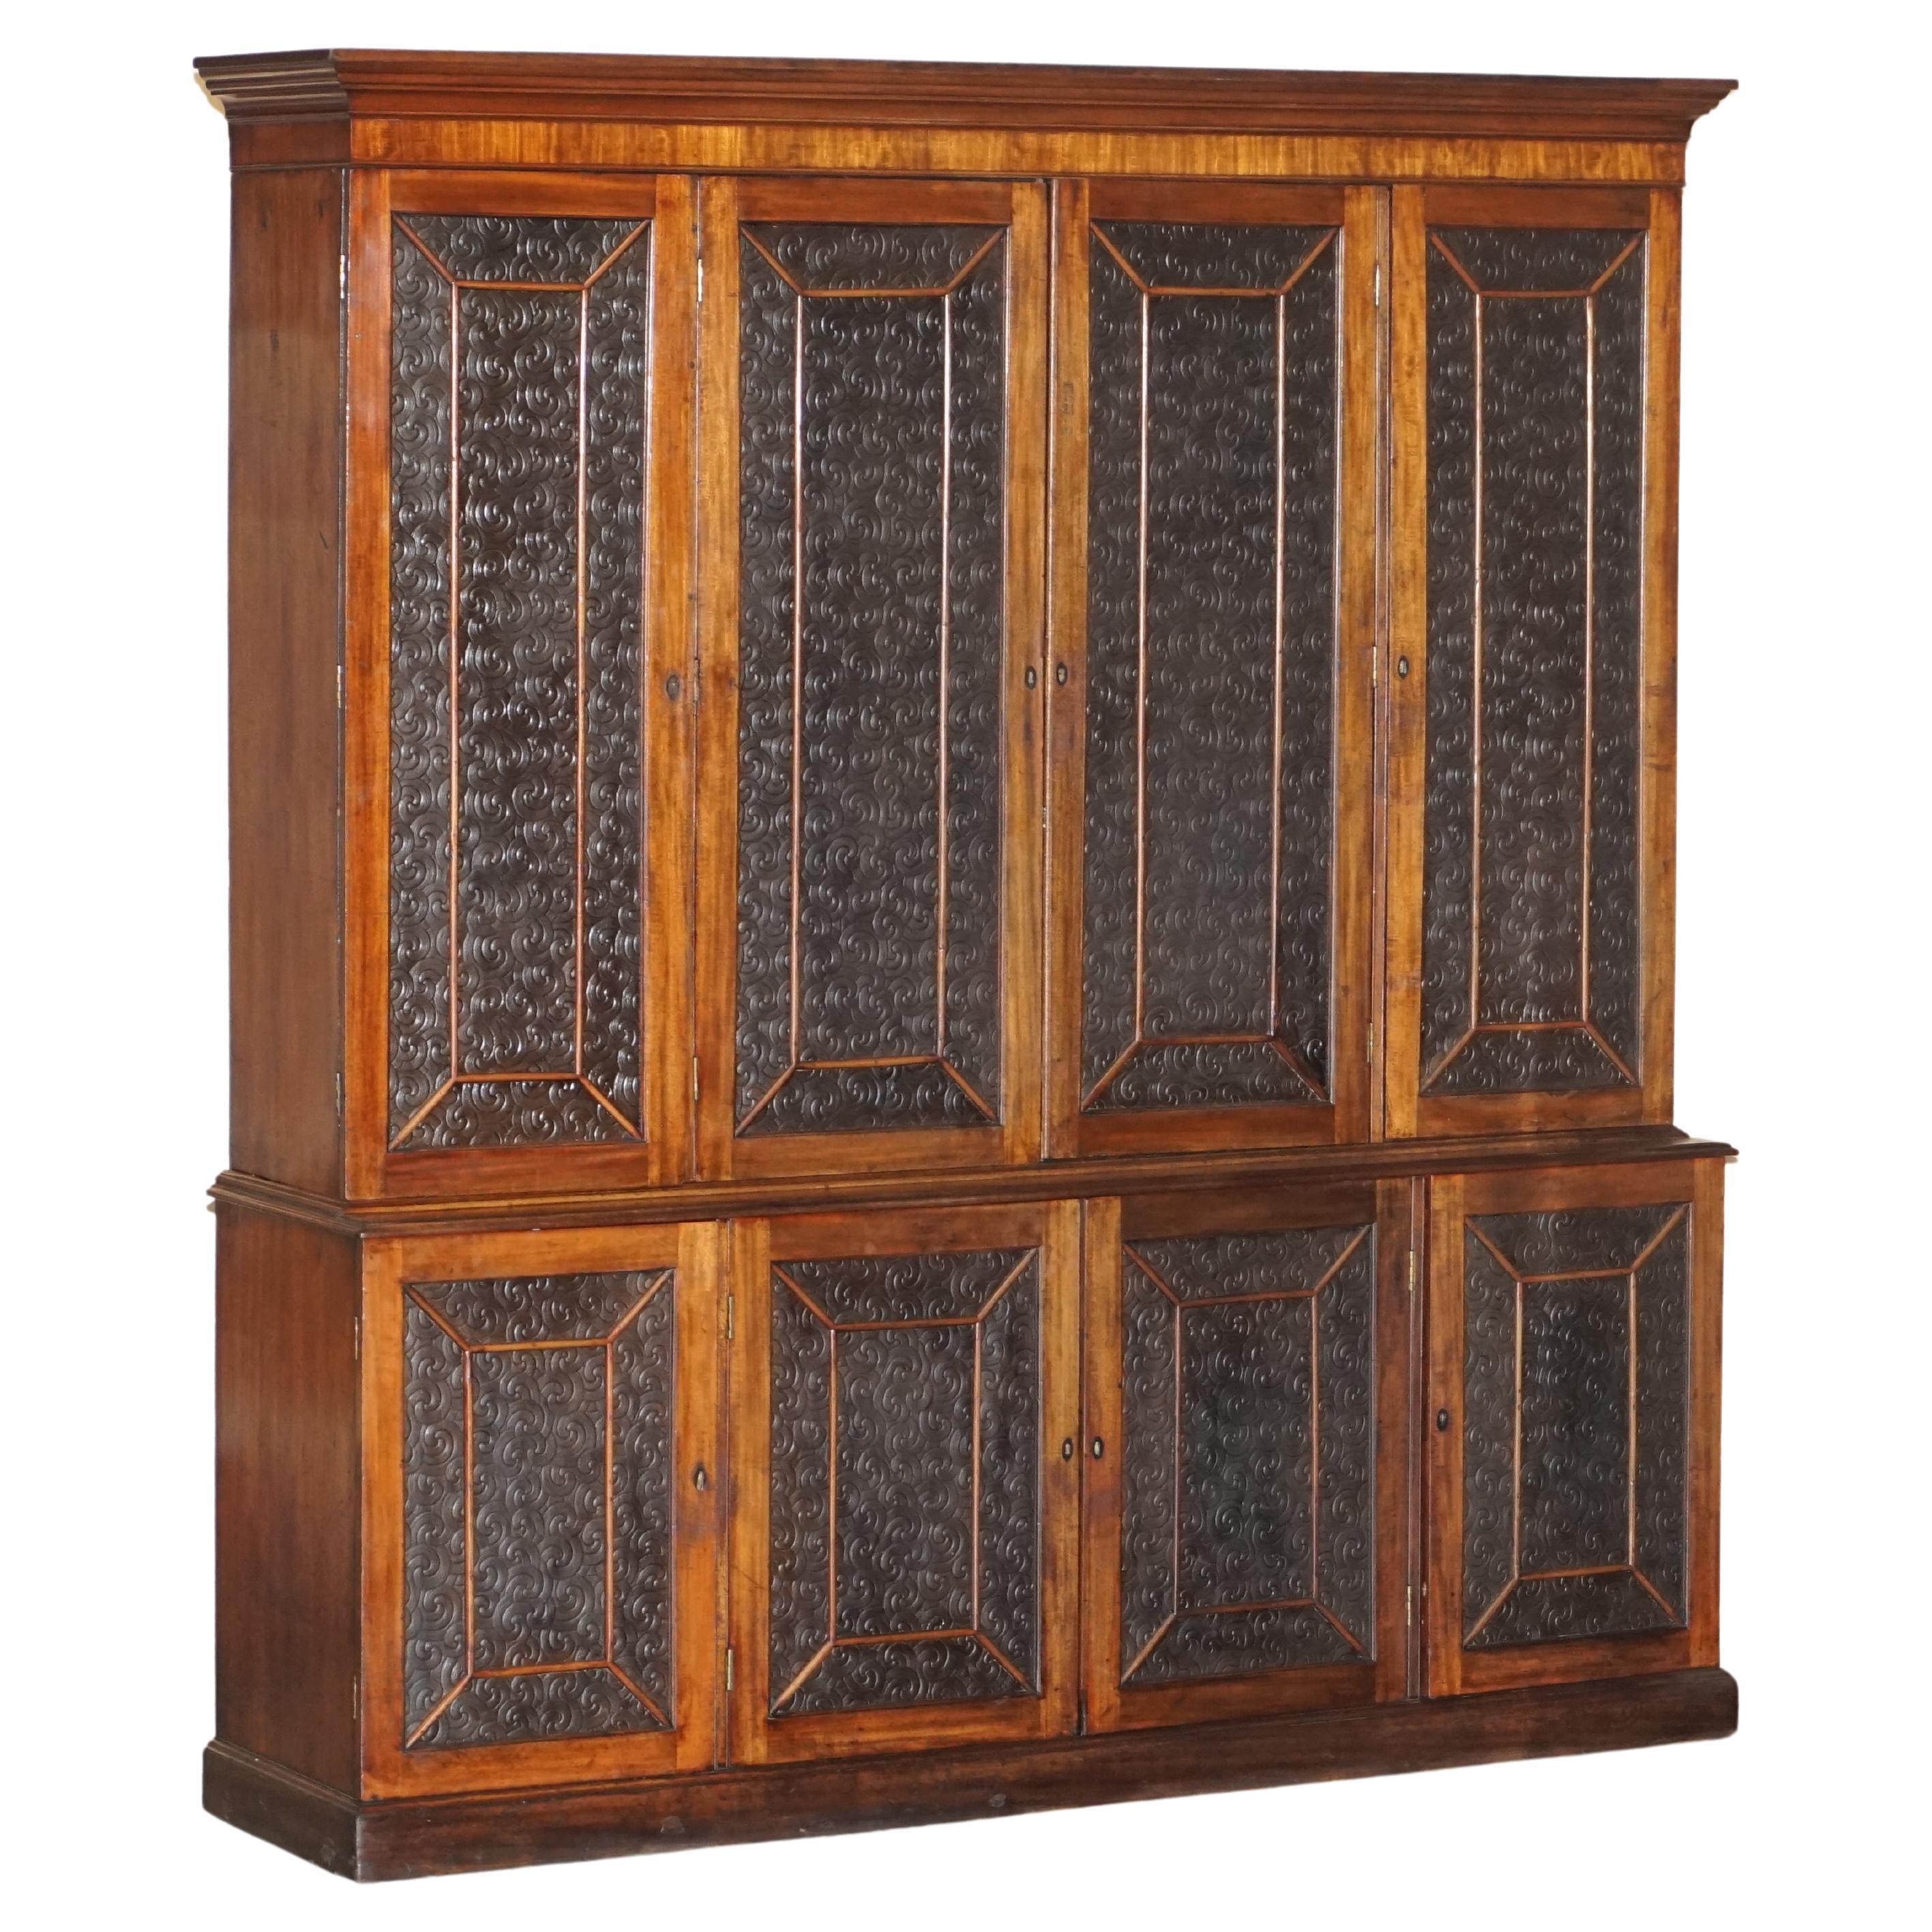 Superbe armoire bibliothèque victorienne ancienne en bois dur et cuir embossé